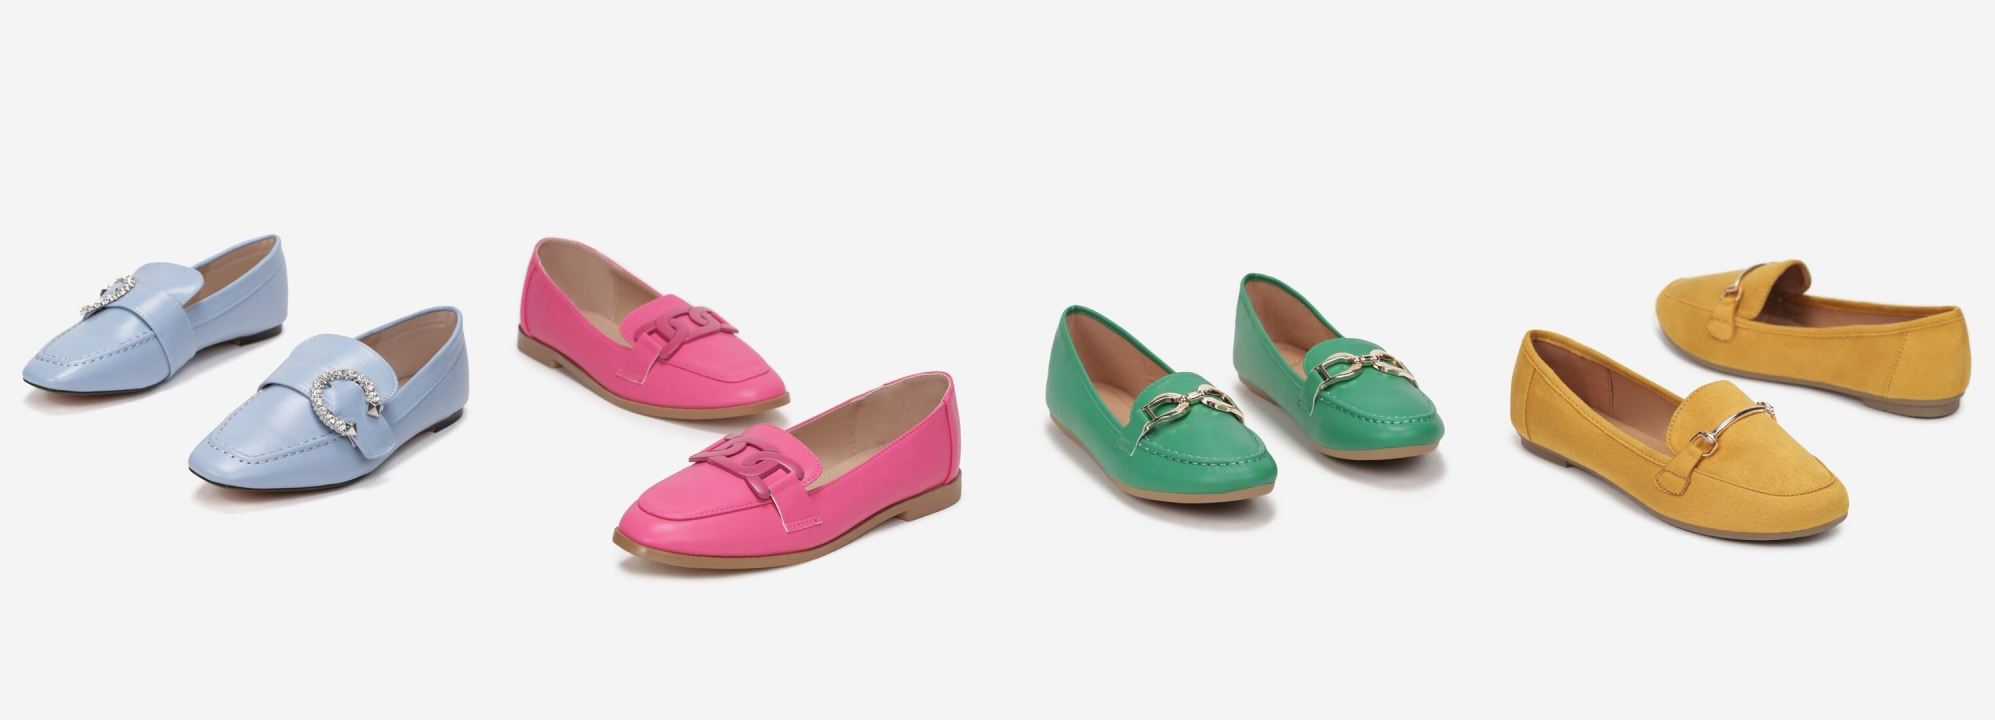 myBaze przegląd butów karyn blog modowy blogerka modowa puławy